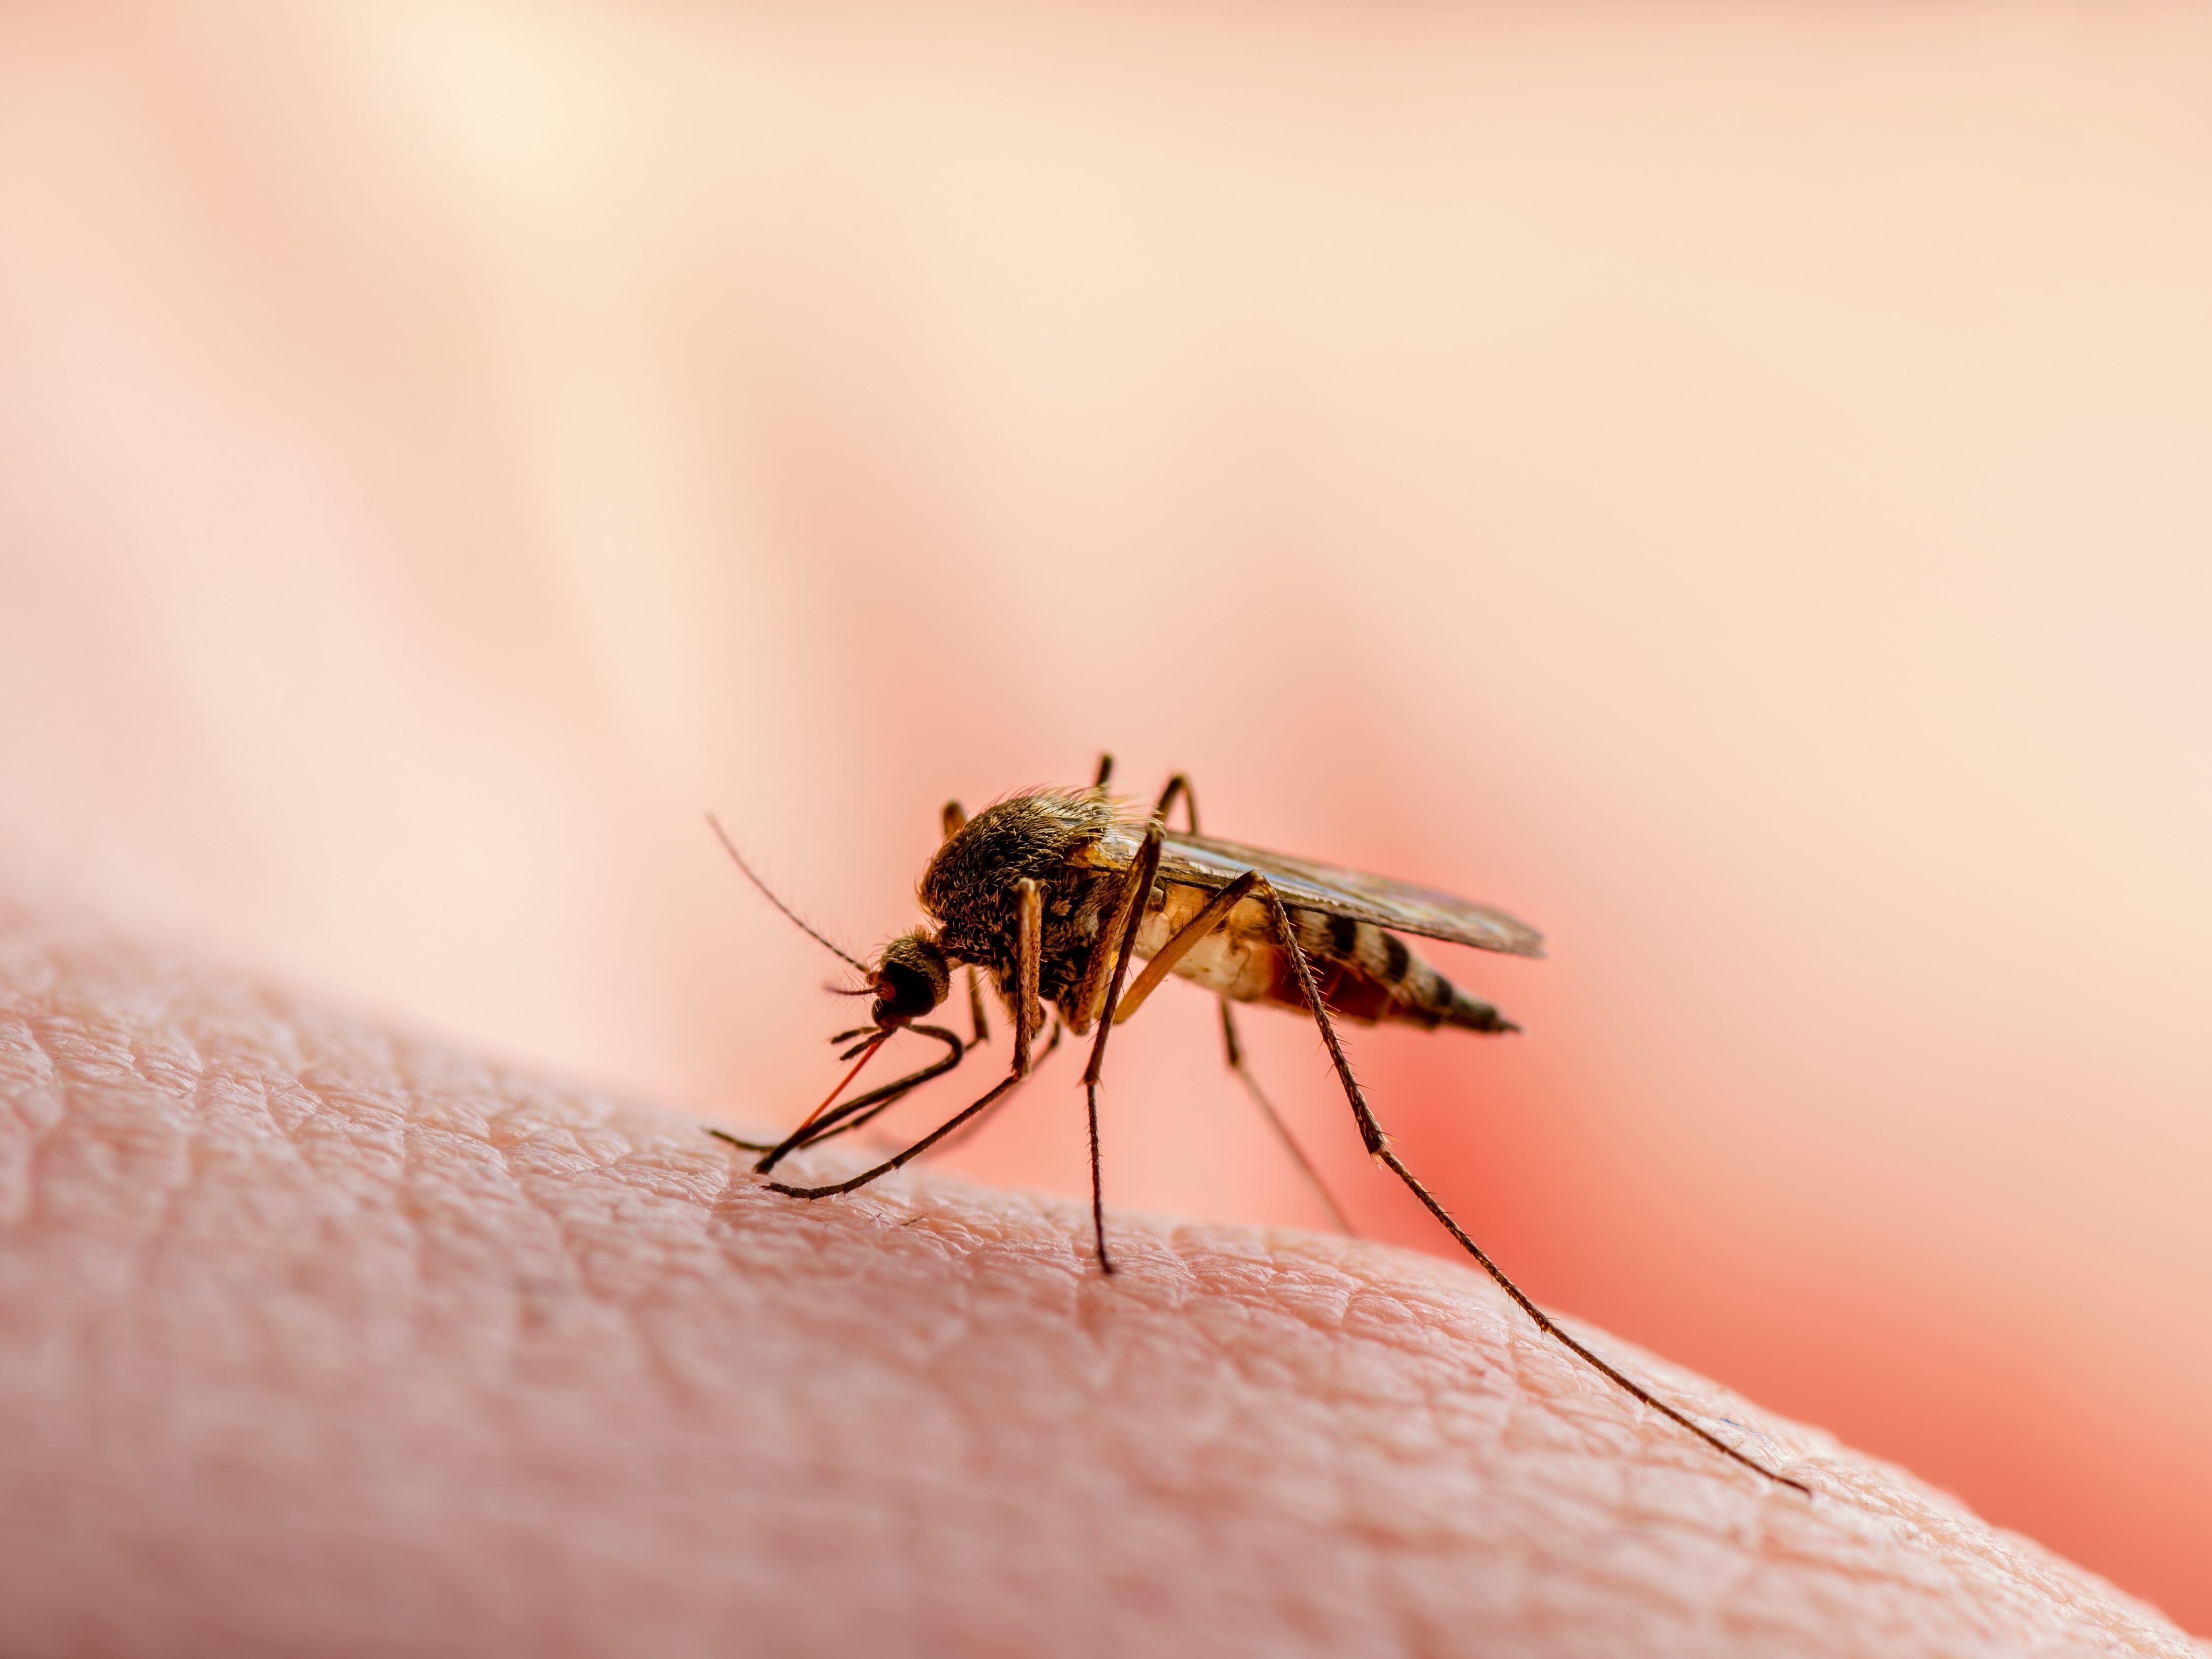 Los mosquitos transmiten enfermedades como malaria, paludismo, dengue, zika, chikungunya, fiebre amarilla y el virus del Nilo Occidental.